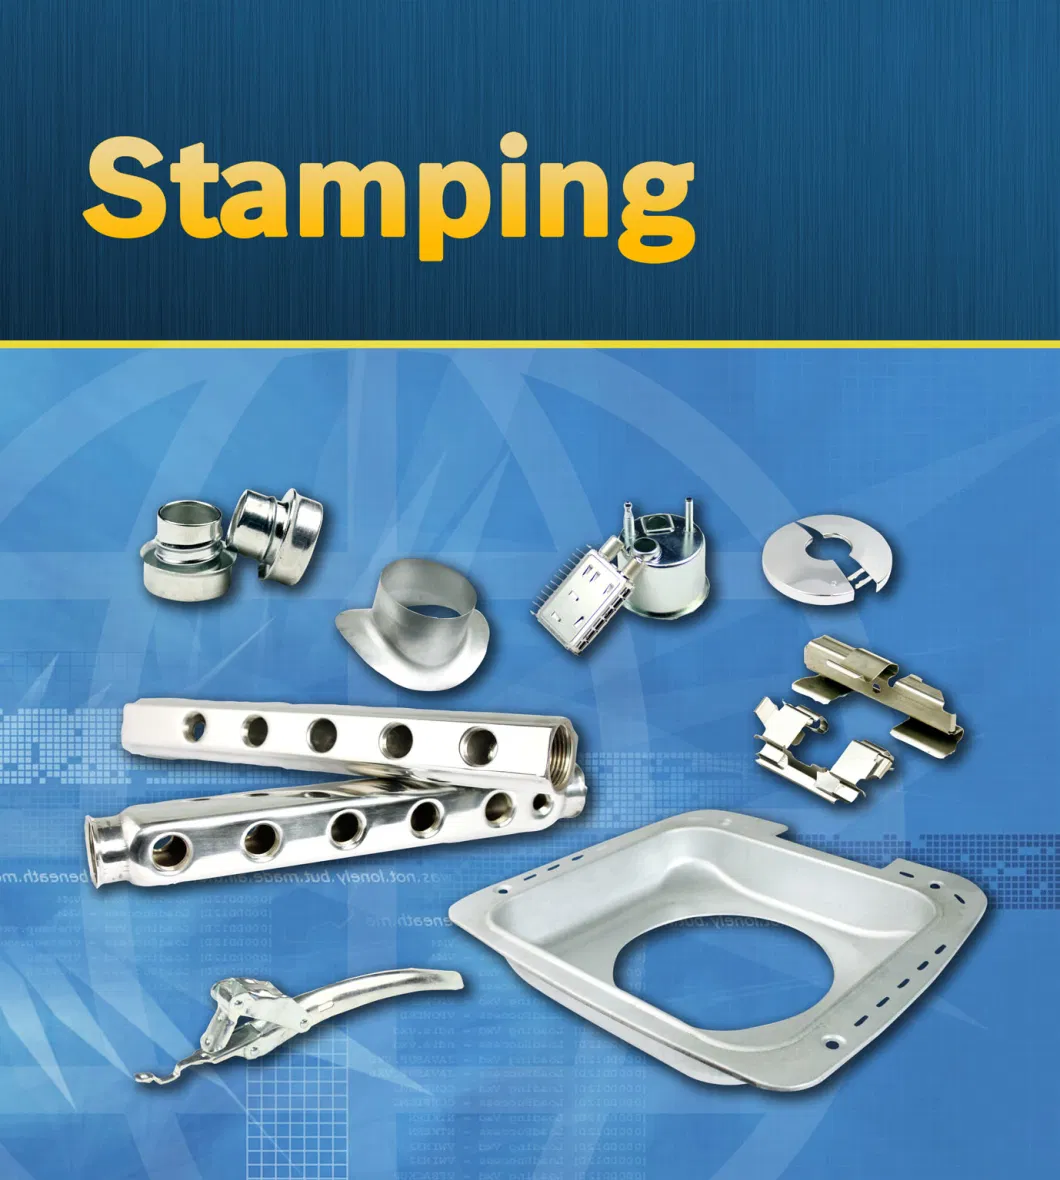 Custom Stamping Metal Auto Car Brake Pads/ High Precision Punching Parts/ OEM Manufacturer of Metal Stamping Machining/ Sheet Metal Bending Forming